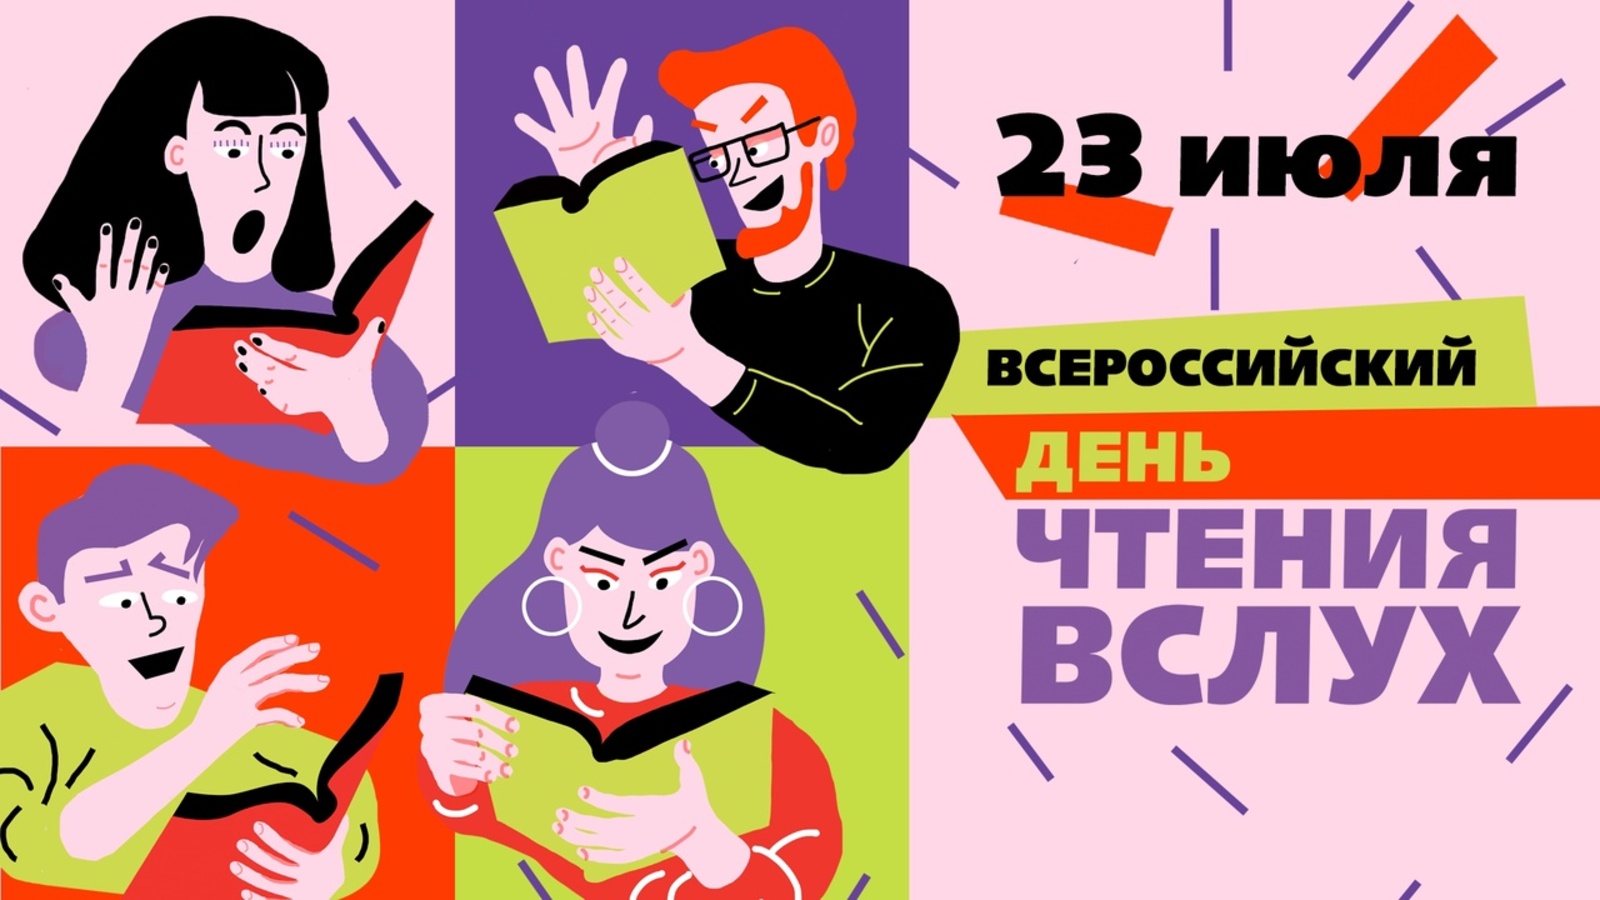 Всероссийский день чтения вслух пройдёт в Башкортостане